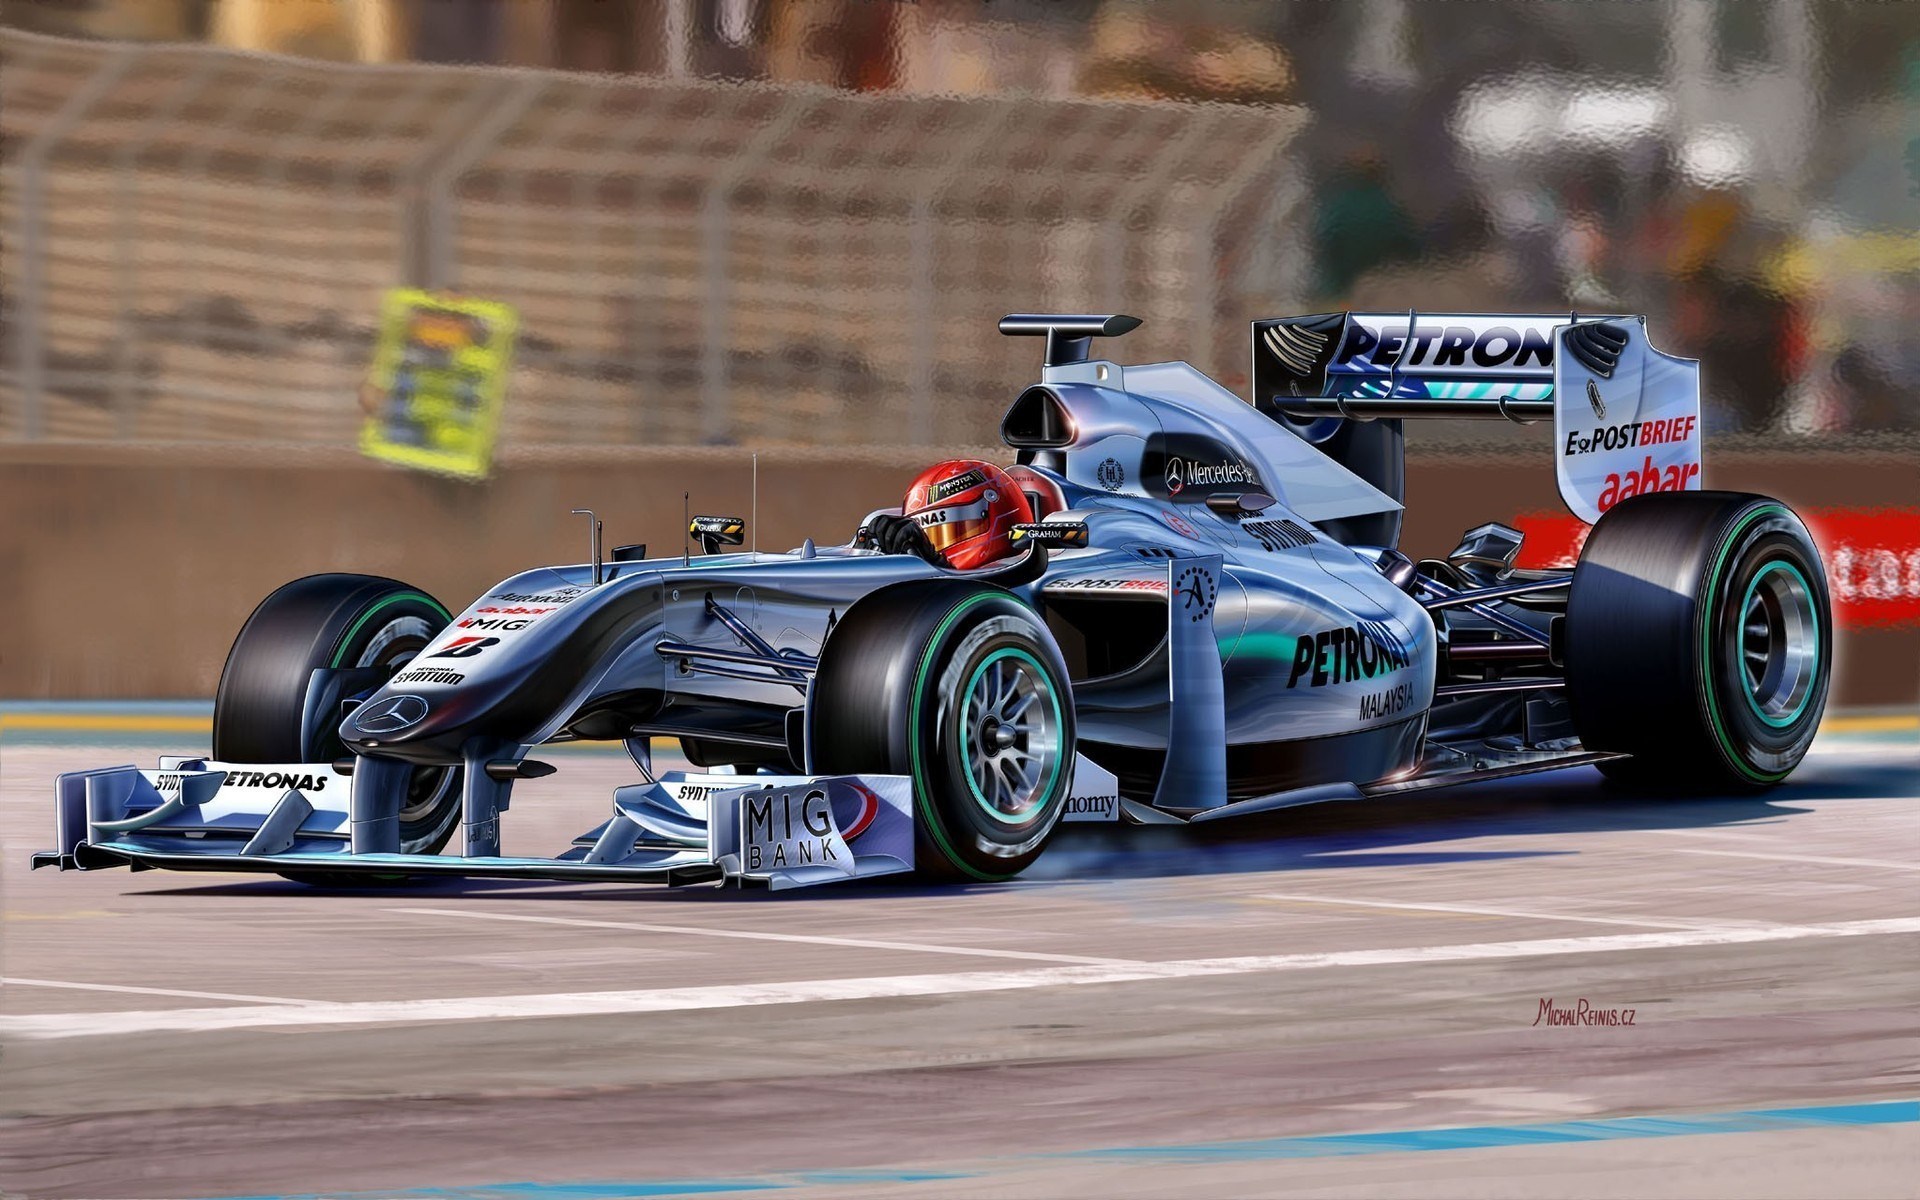 Formula Wallpaper Mercedes Image